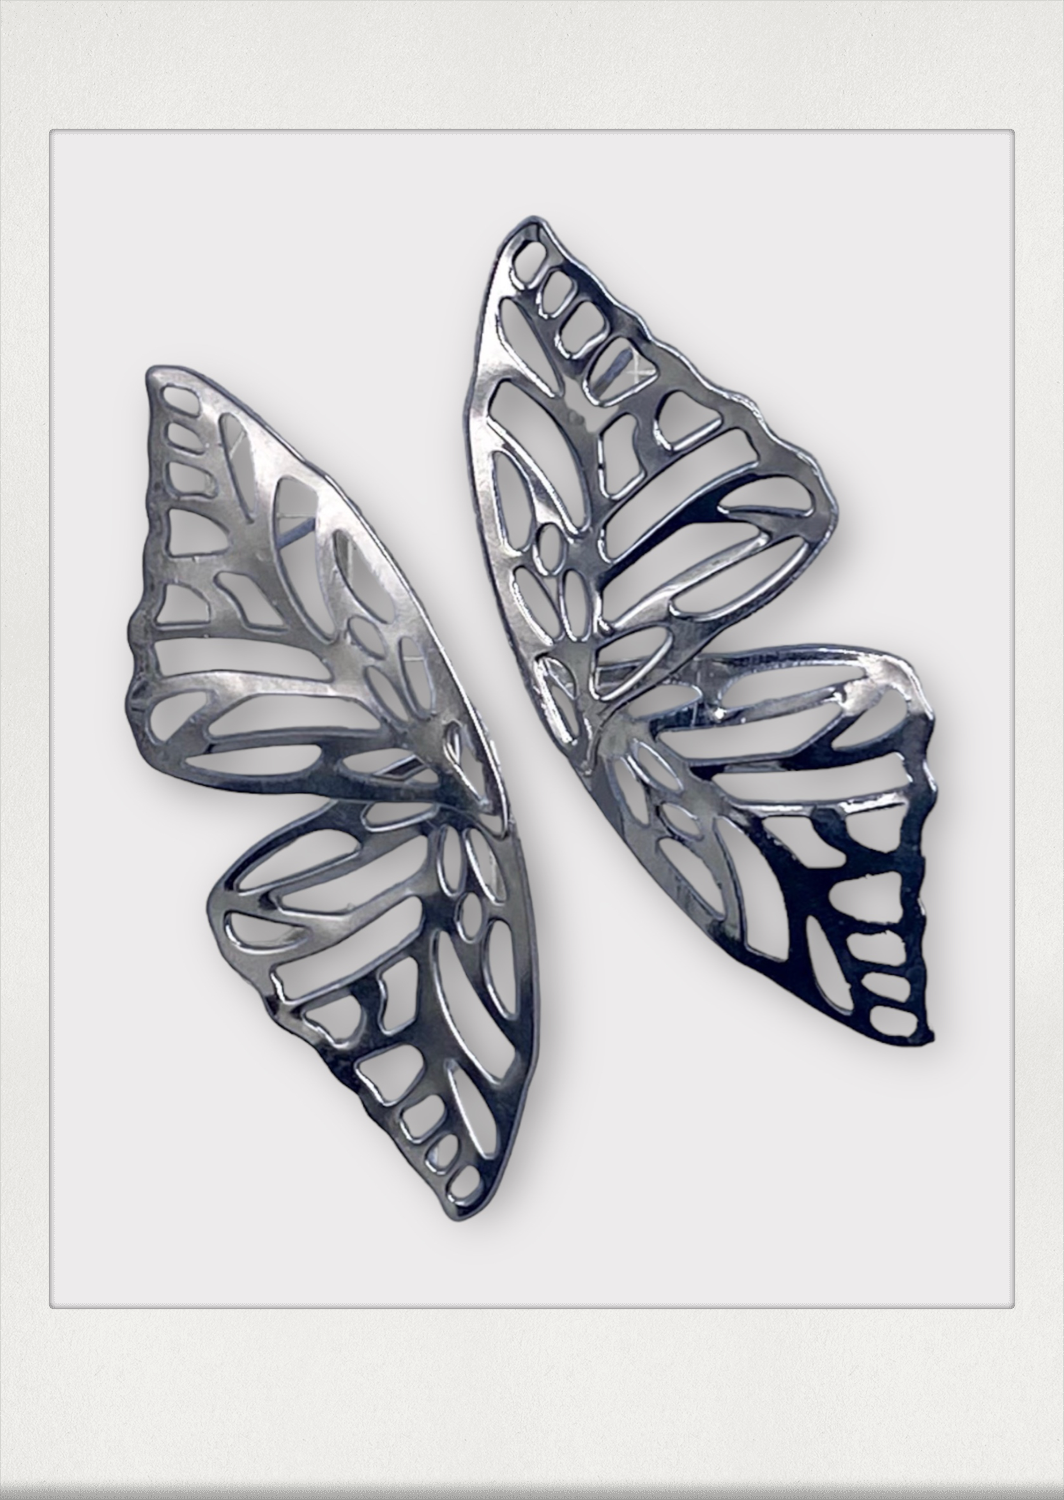 Flutter By Earrings